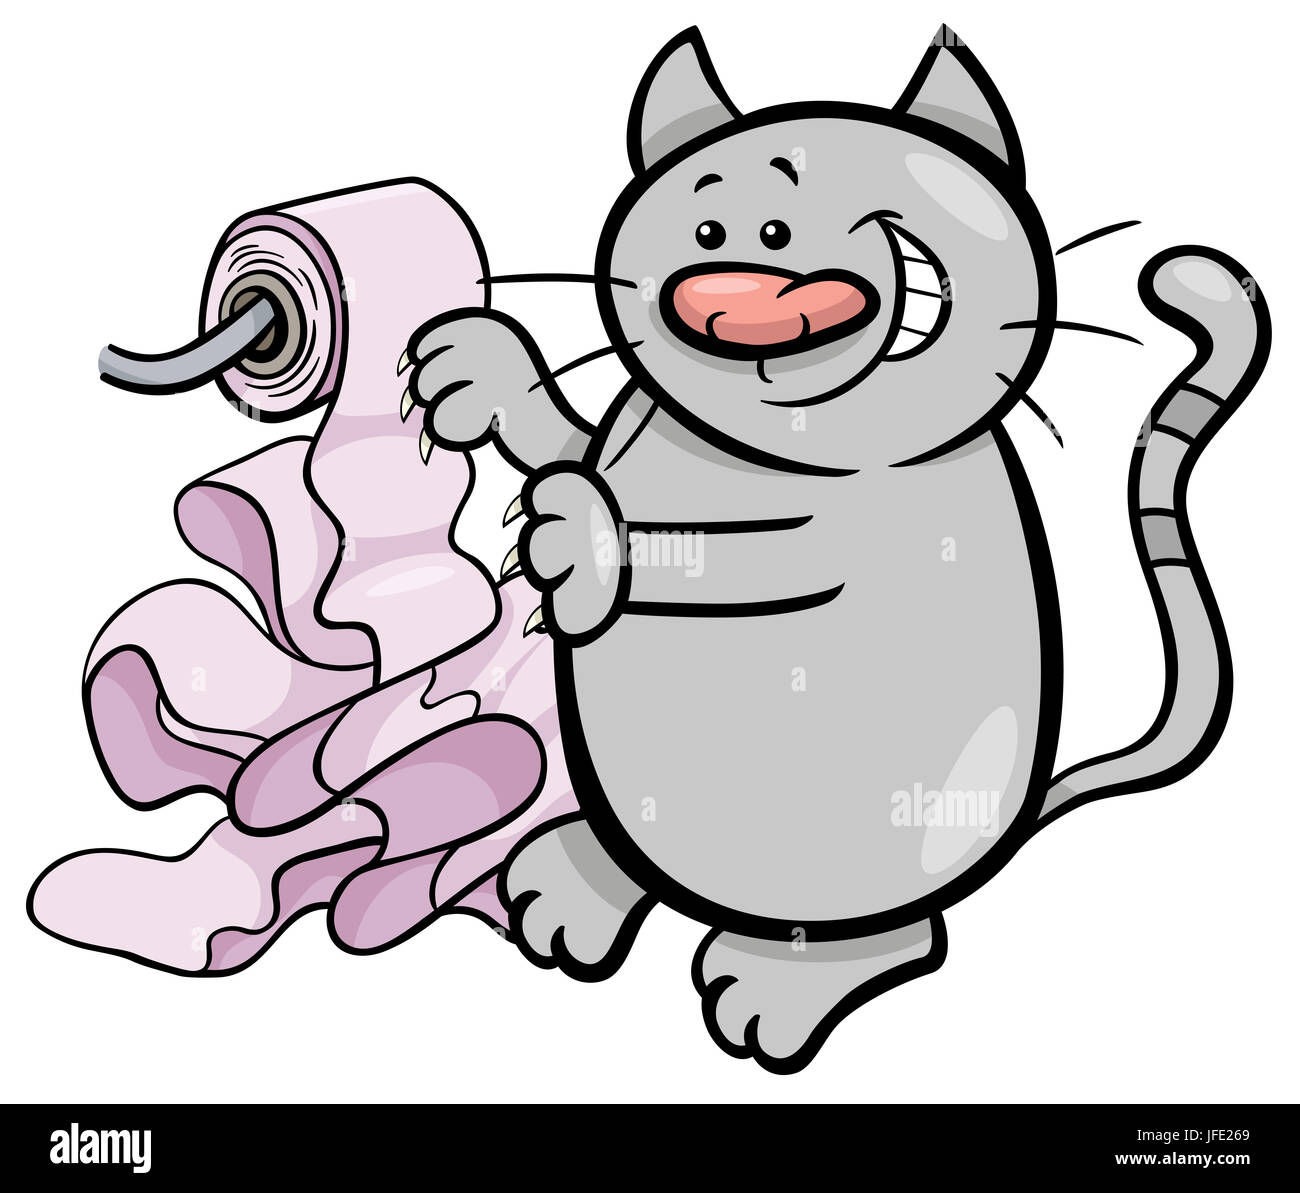 Jouer avec du papier toilette chat cartoon Banque D'Images